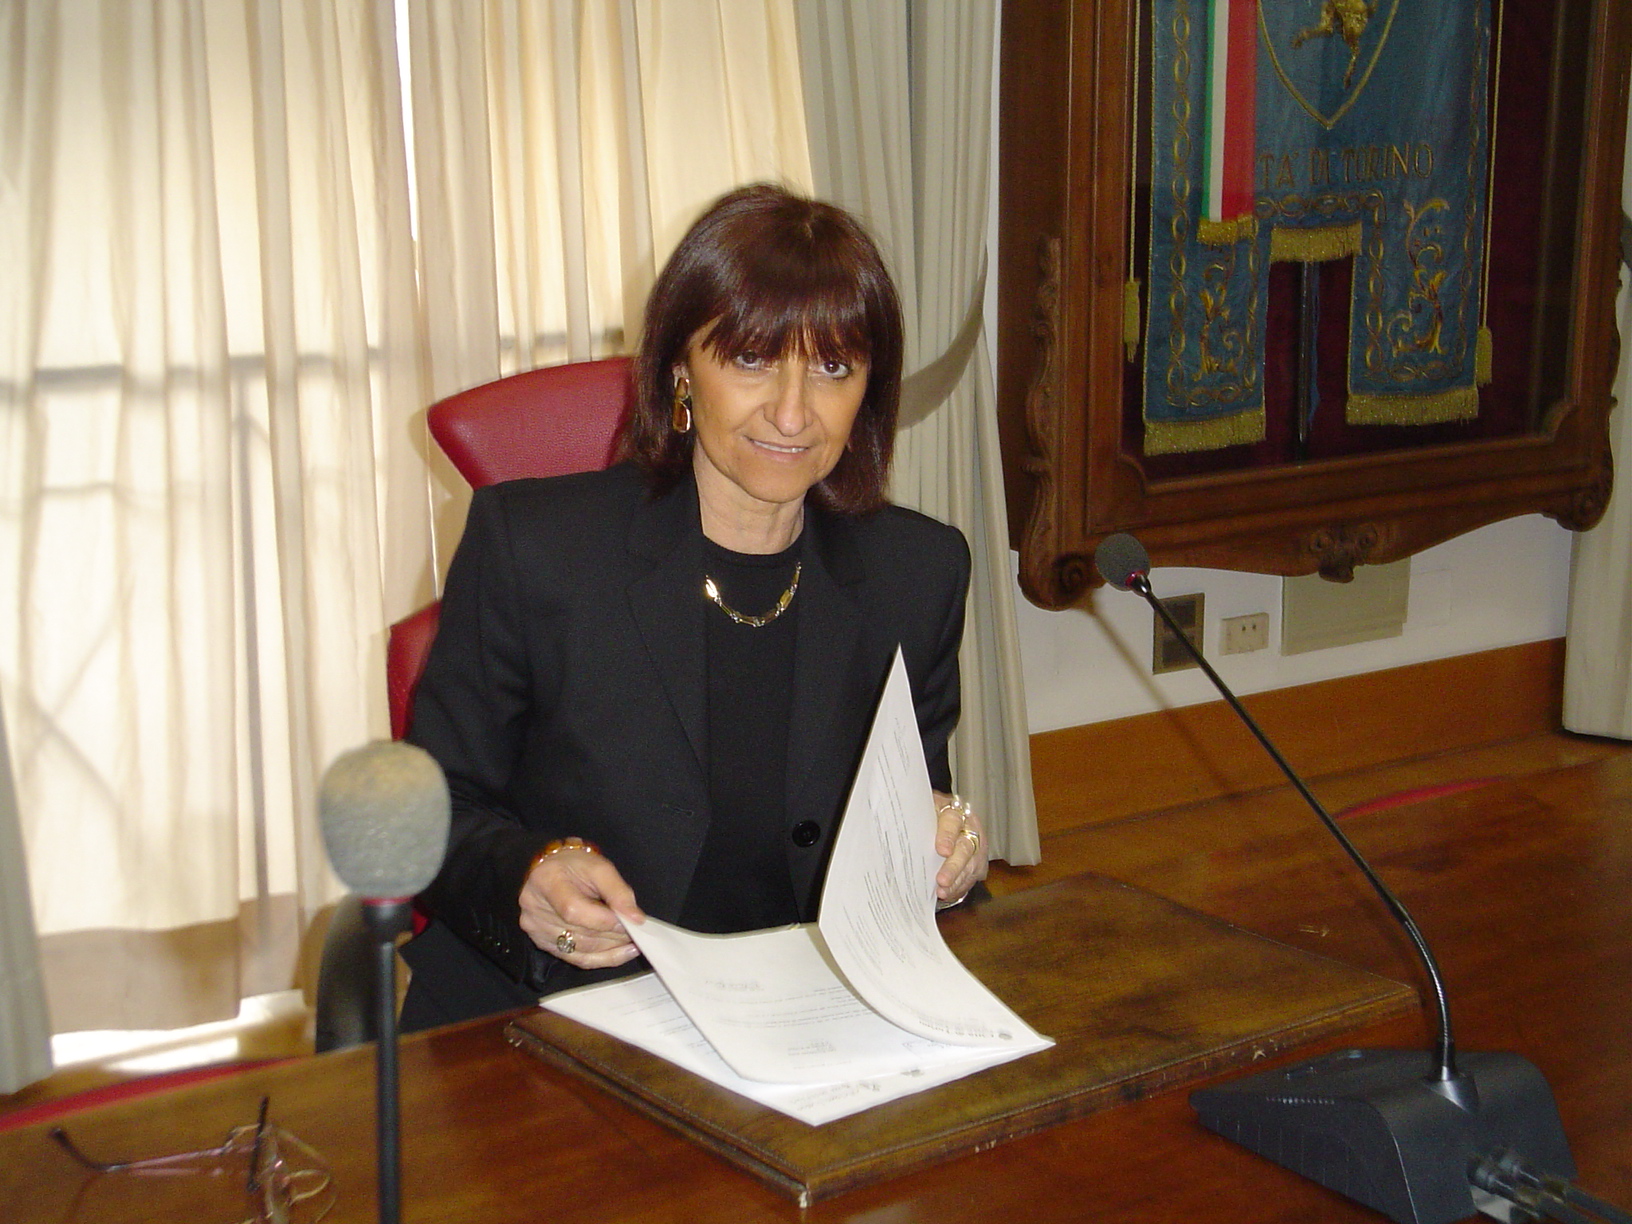 Santina Vinciguerra